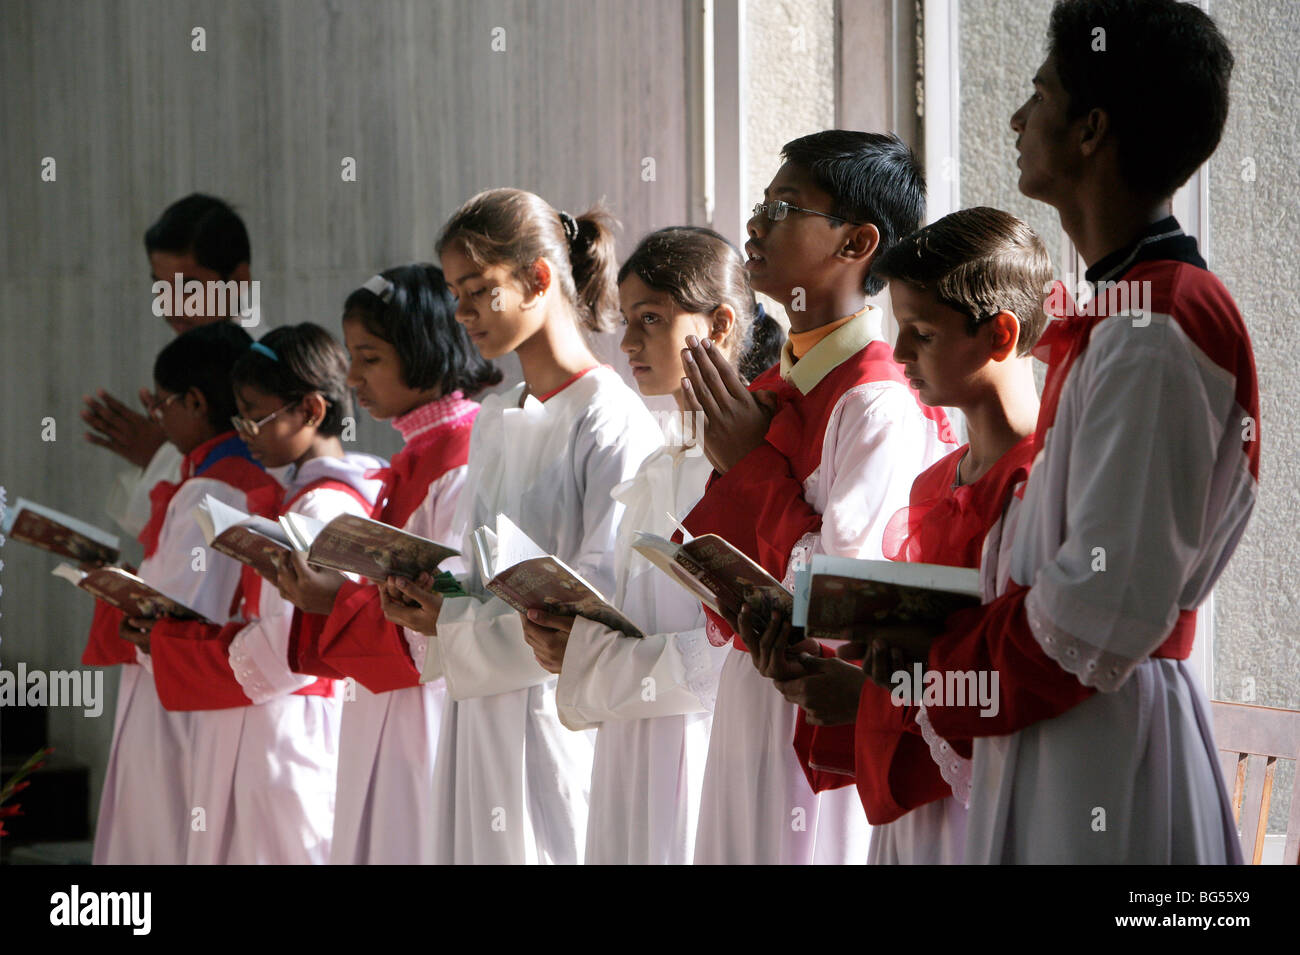 Ministranten während einer Masse Sonntagsgottesdienst in der römisch-katholischen Kathedrale Saint Joseph in Lucknow, Uttar Pradesh, Indien Stockfoto